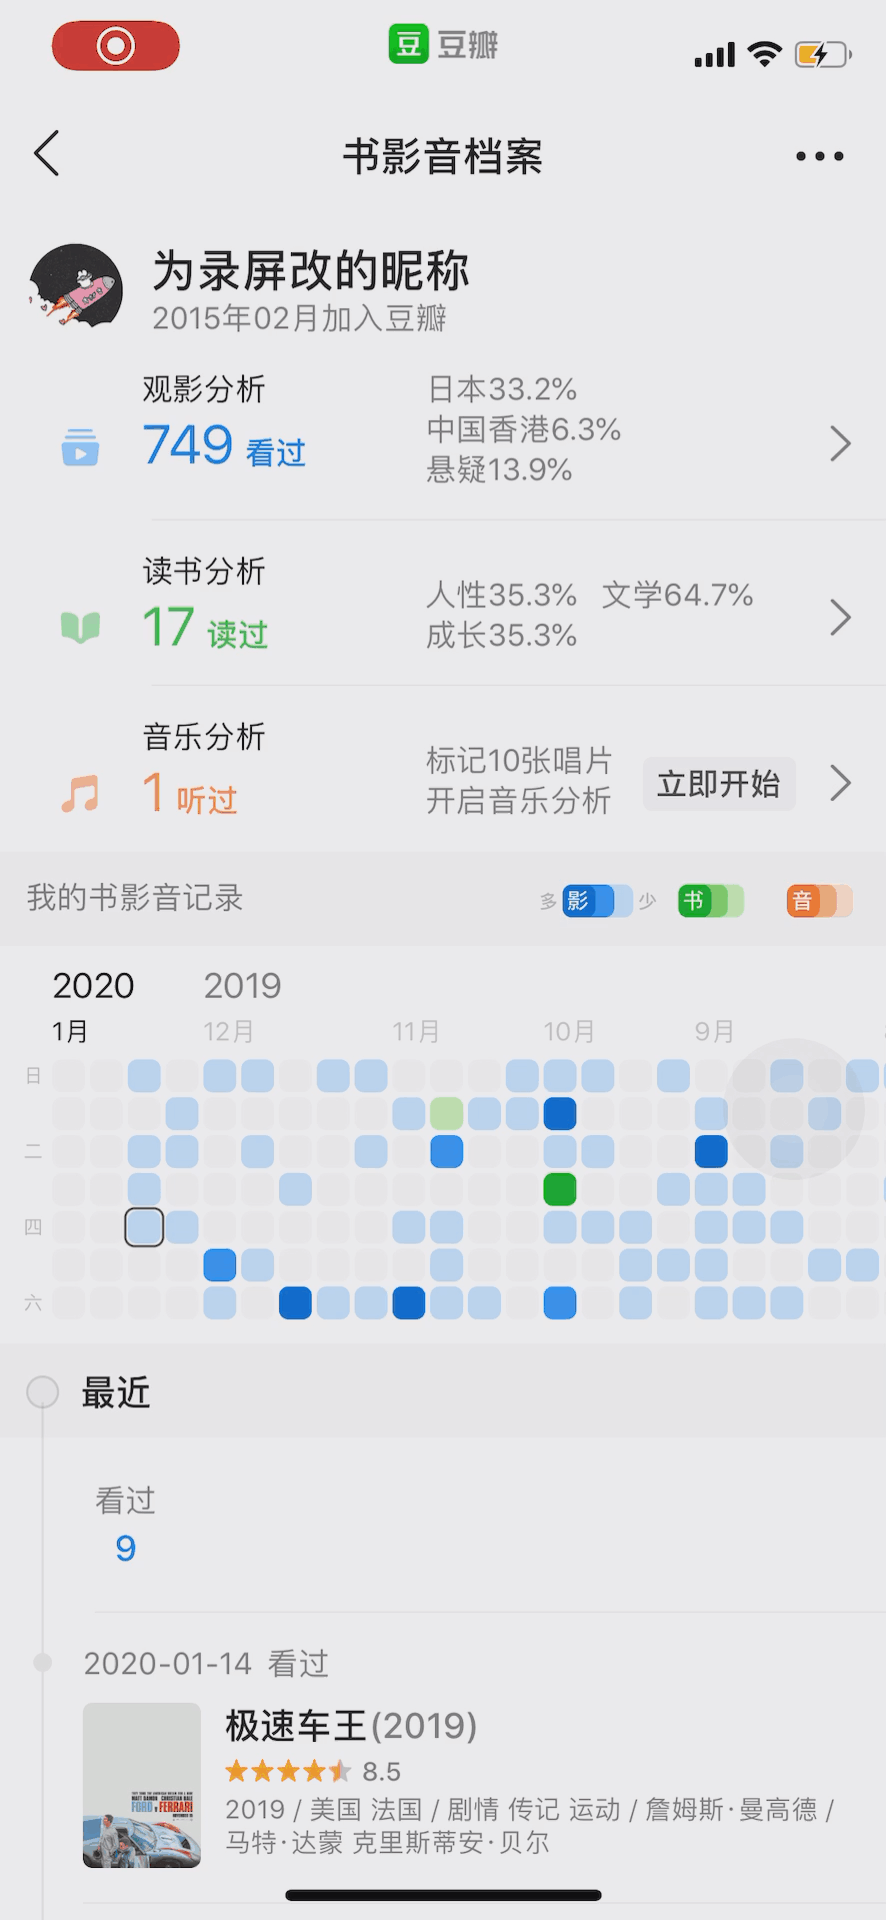 2020.01.21 - 交互设计分享01丨以网易云音乐、豆瓣等app为例-Skywen天问信息